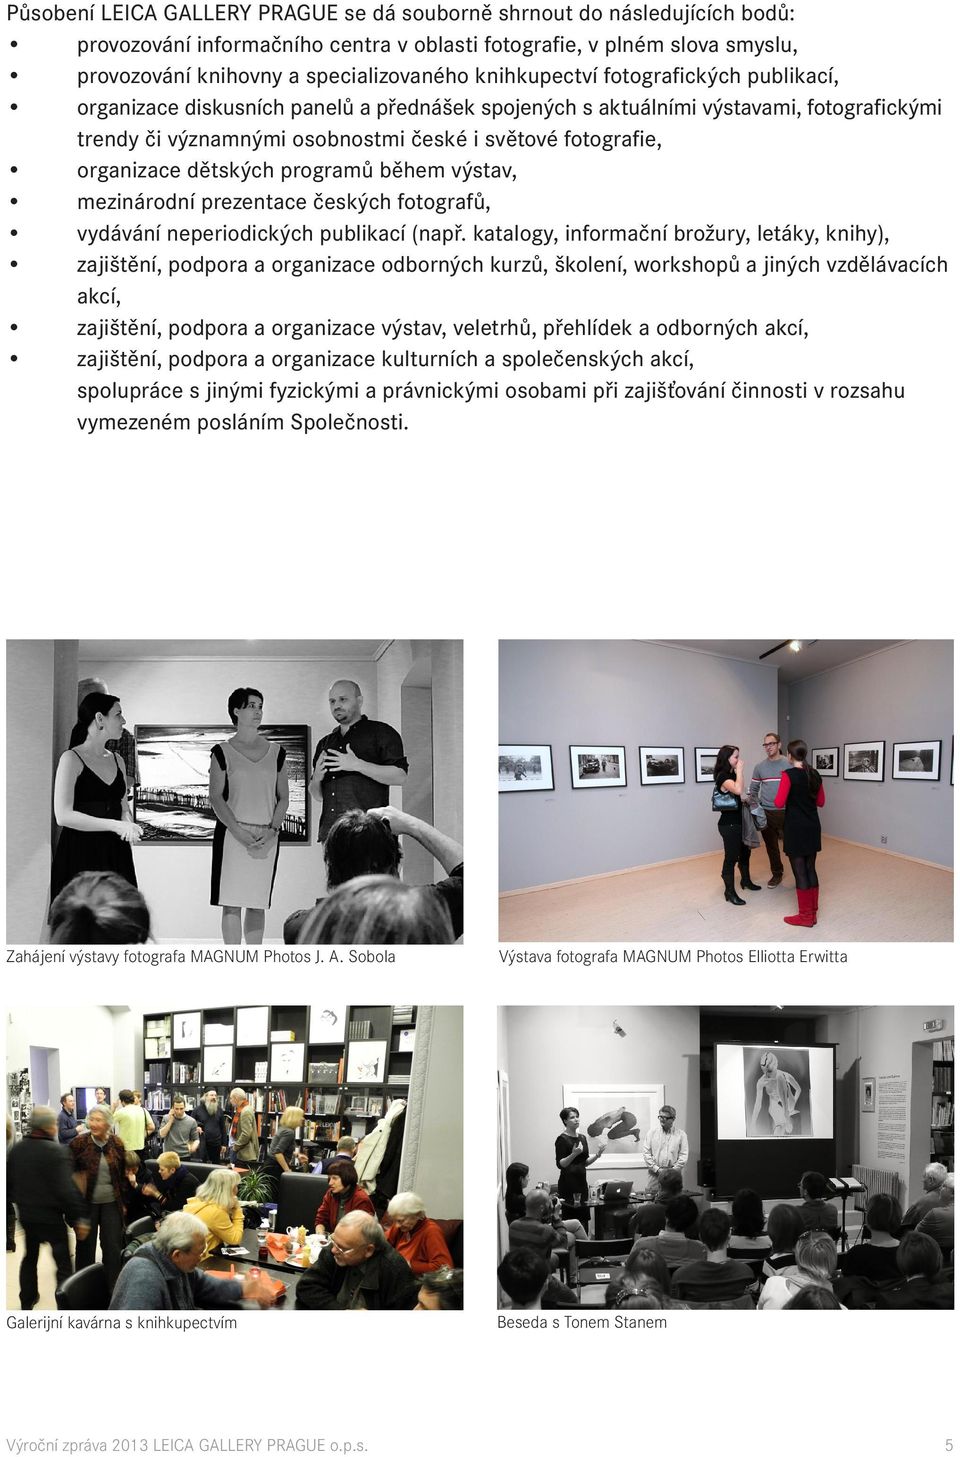 dětských programů během výstav, mezinárodní prezentace českých fotografů, vydávání neperiodických publikací (např.